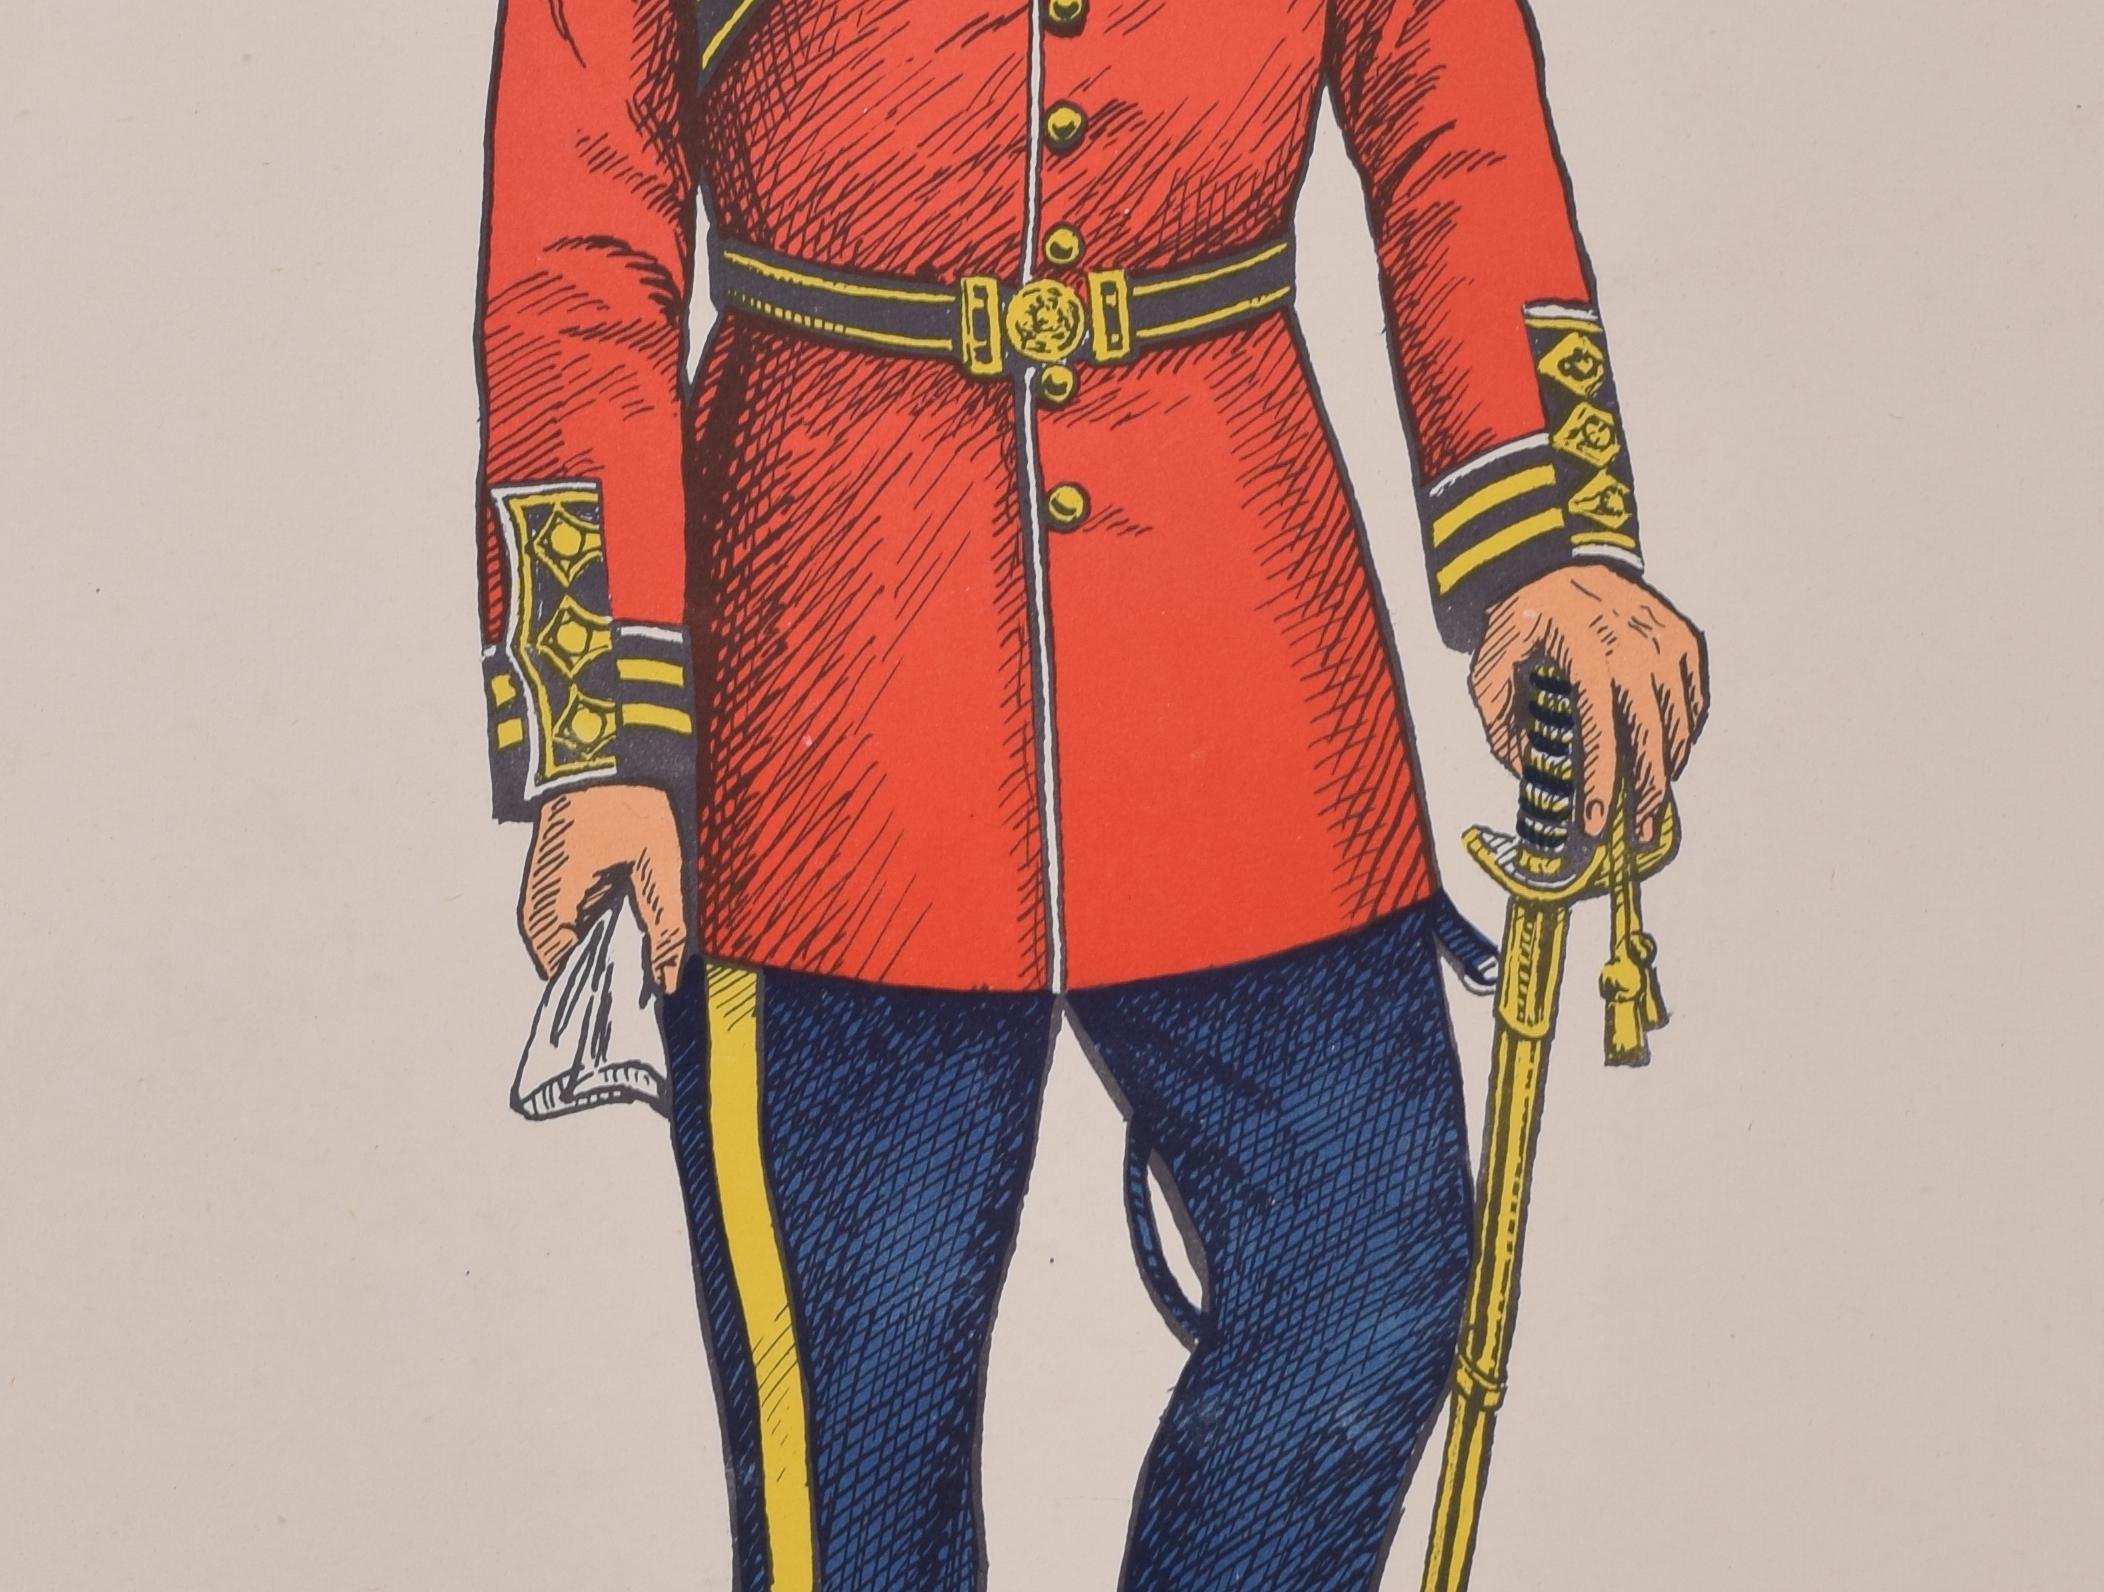 Die Neunte (Queen's Royal Lancers) Offiziersuniform 1899
Lithographie
50 x 31 cm

Produziert für das Institute of Army Education. Gedruckt für das HM Stationery Office von I A Limited, Southall 51.

Diese Plakate wurden vom Institut für